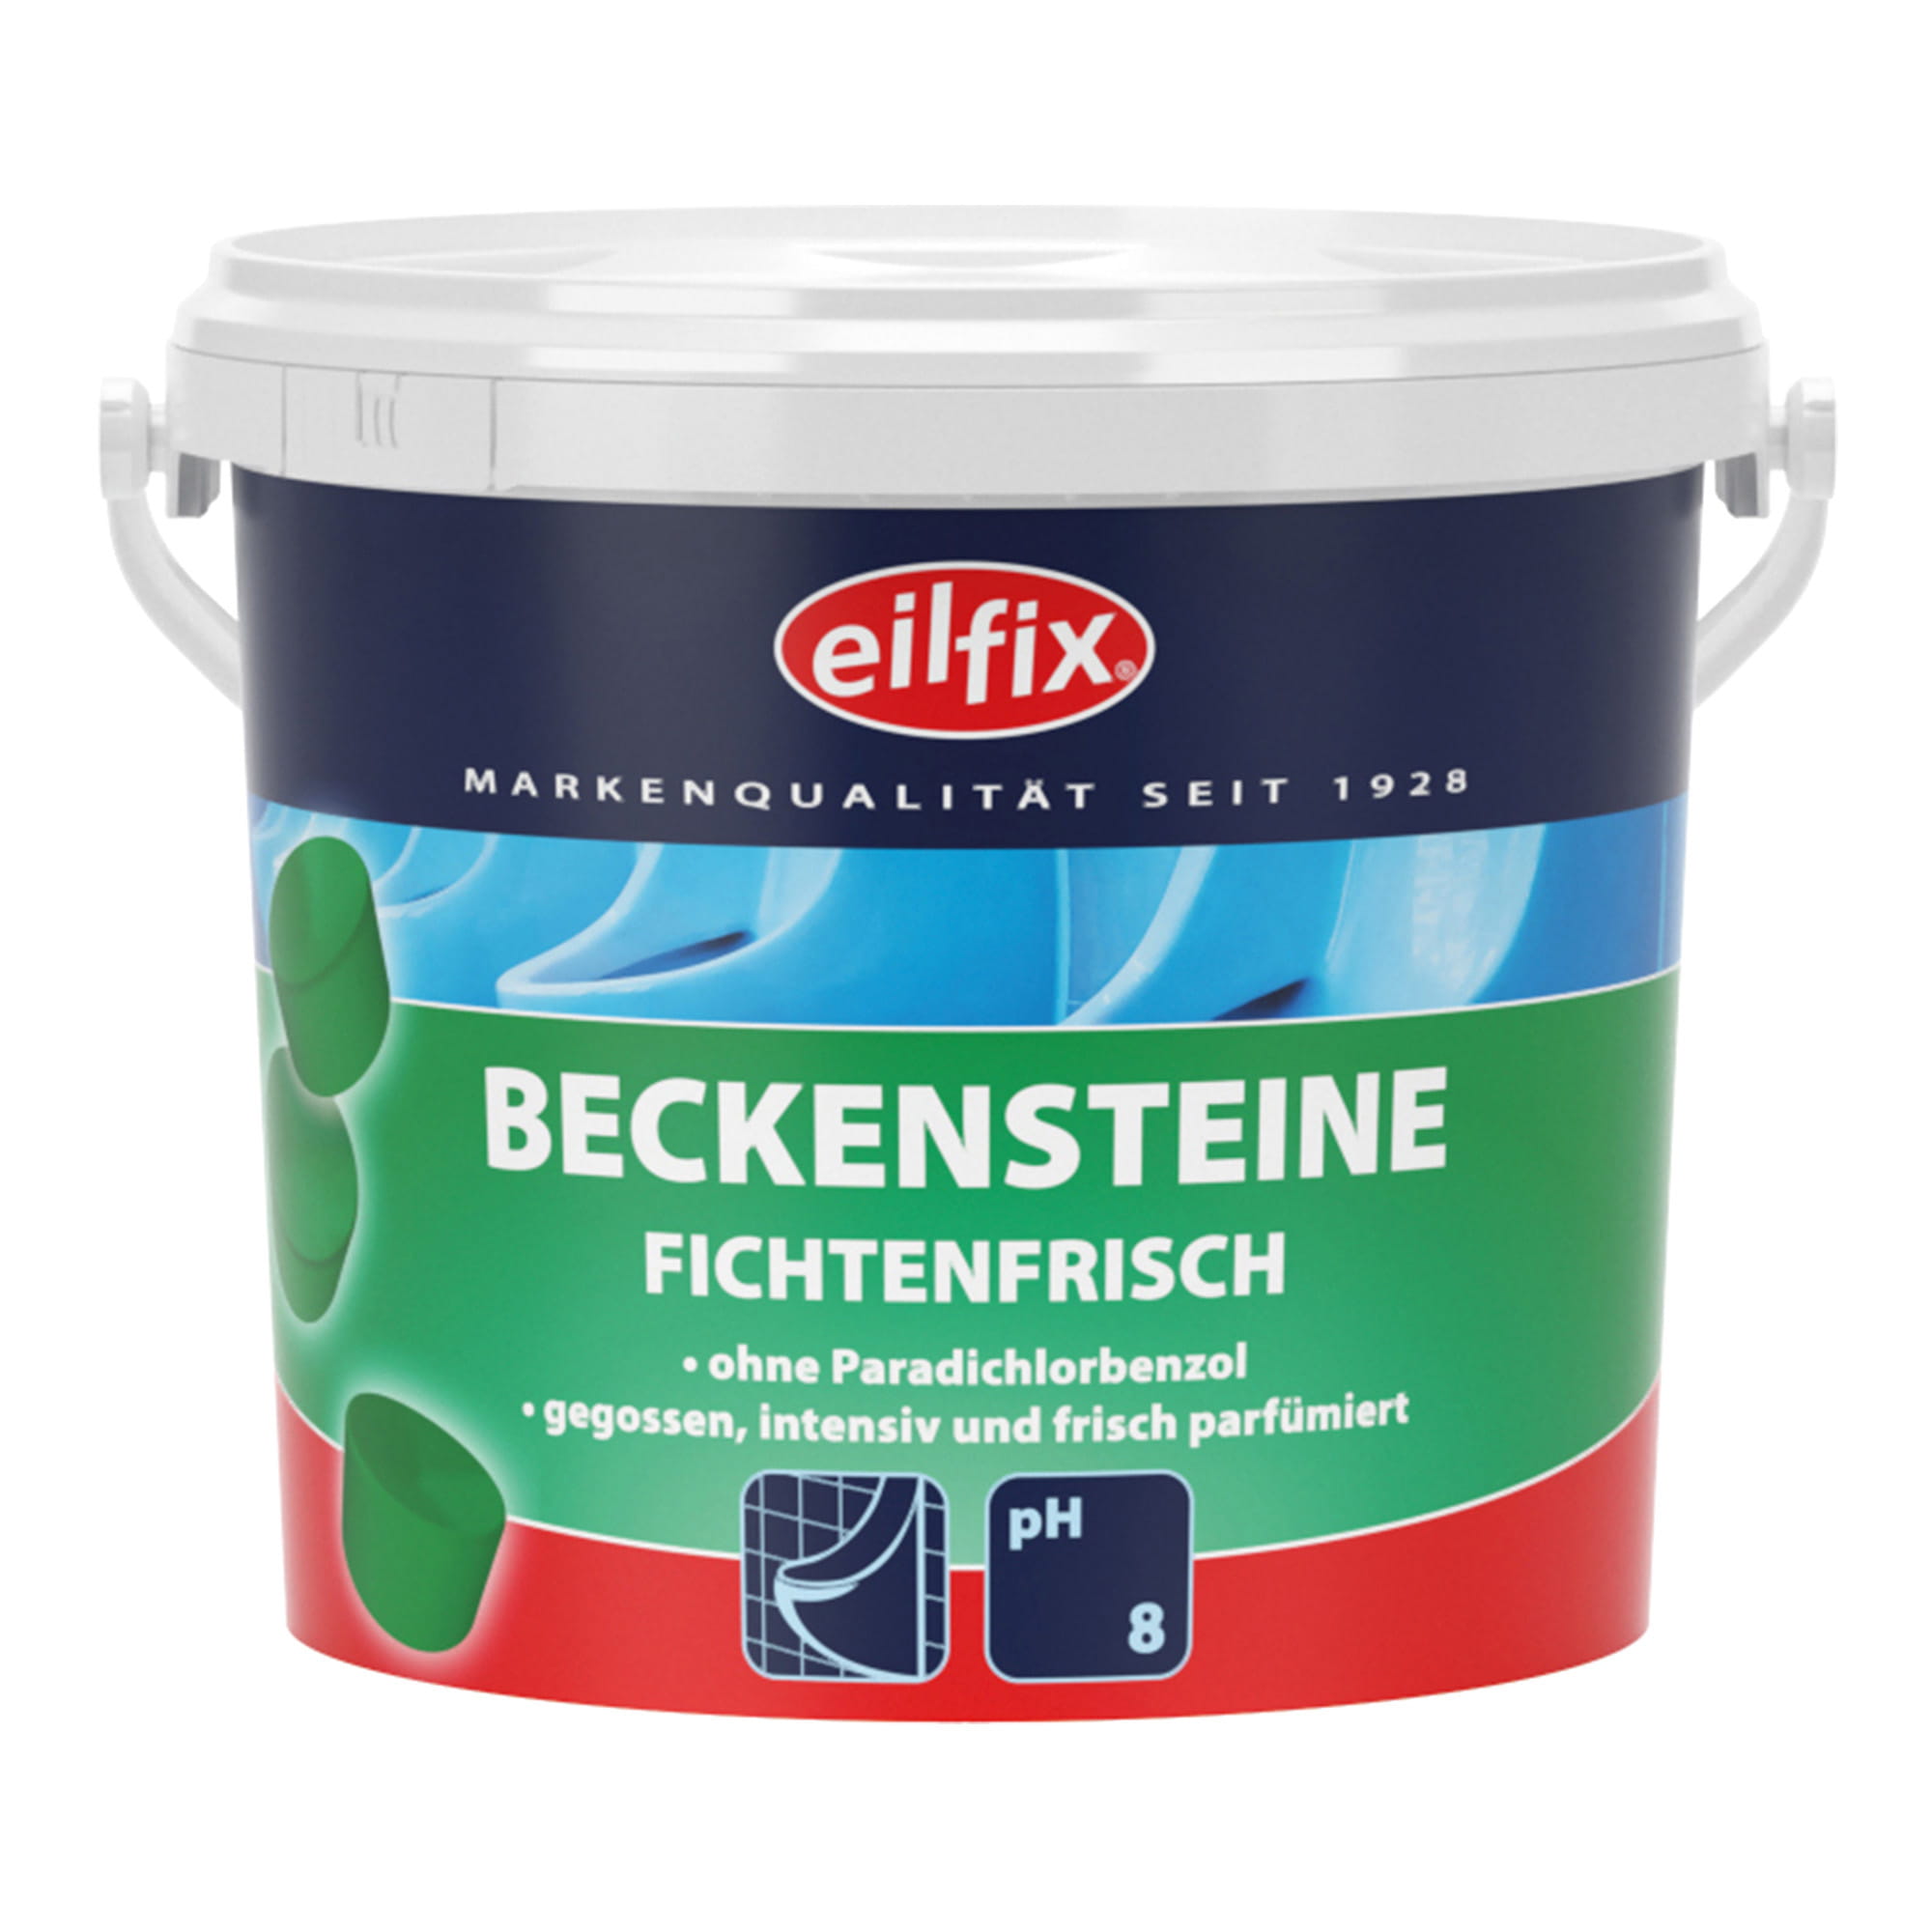 Eilfix Bio-Beckensteine Fichte 1 kg Dose 100128-001-000_1